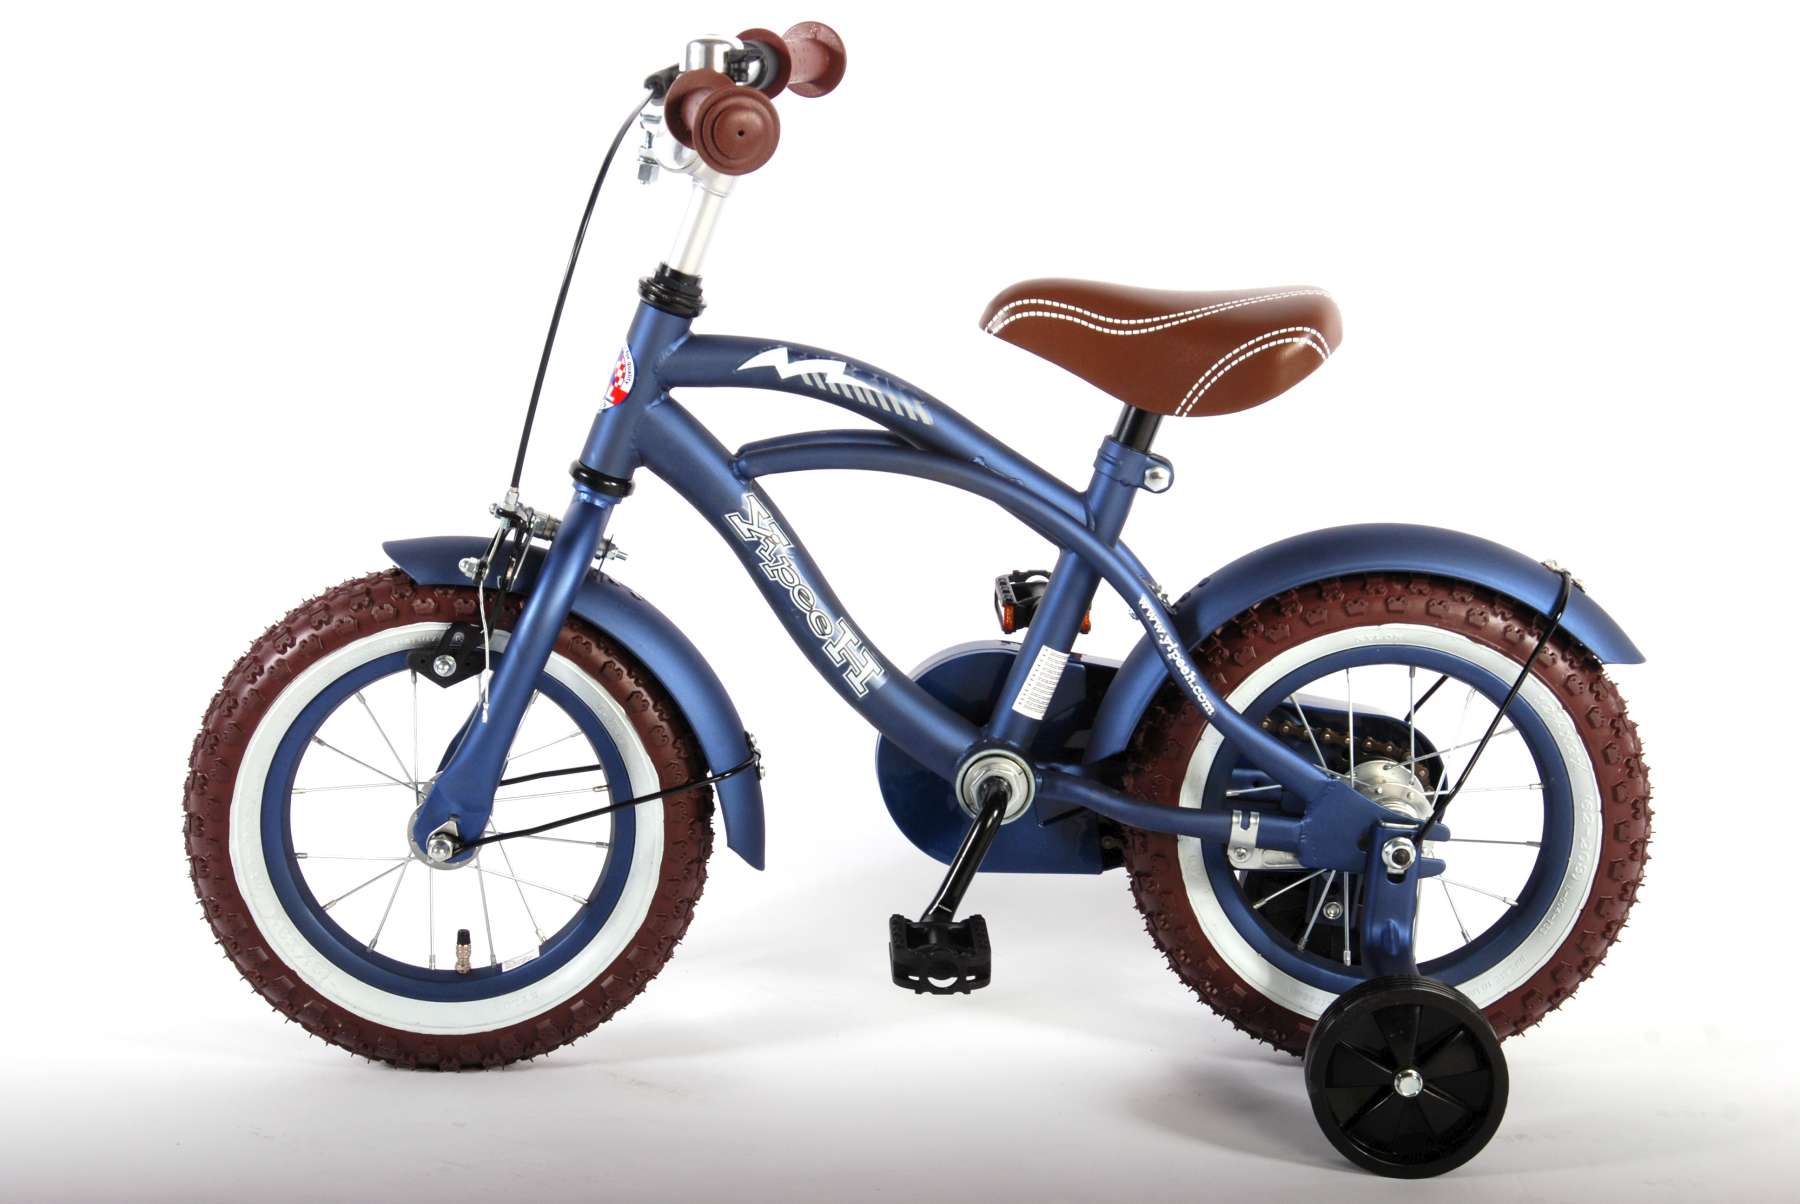 Vélo Pour Enfants 12 pouces RB Freestyle avec porte-boissons bleu